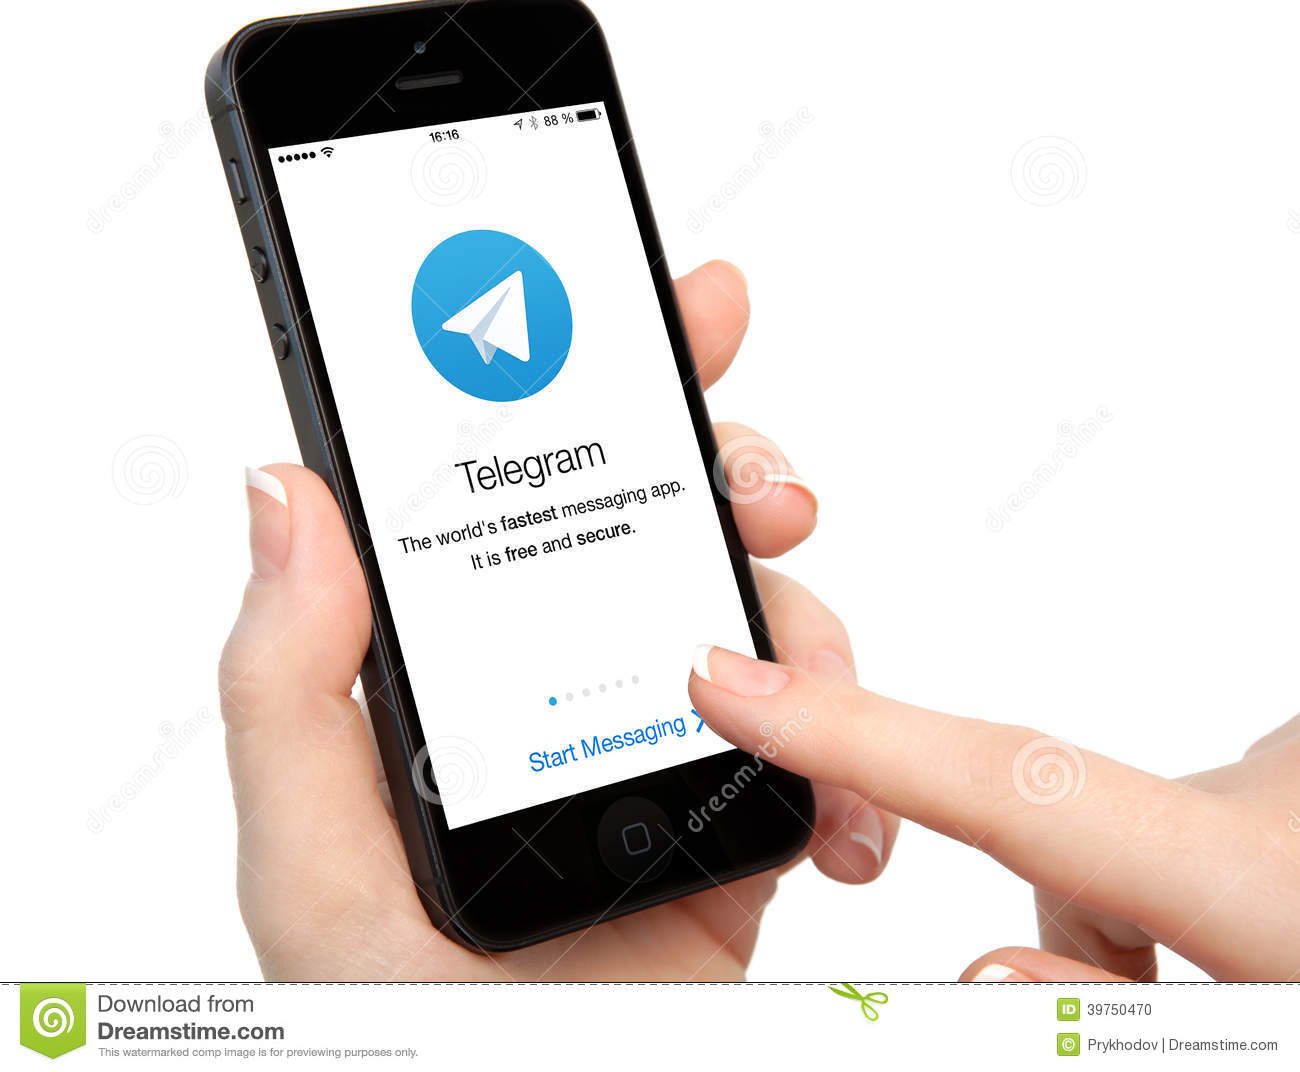 Aggiornamento 3.13 per Telegram: svolta con gli iPhone